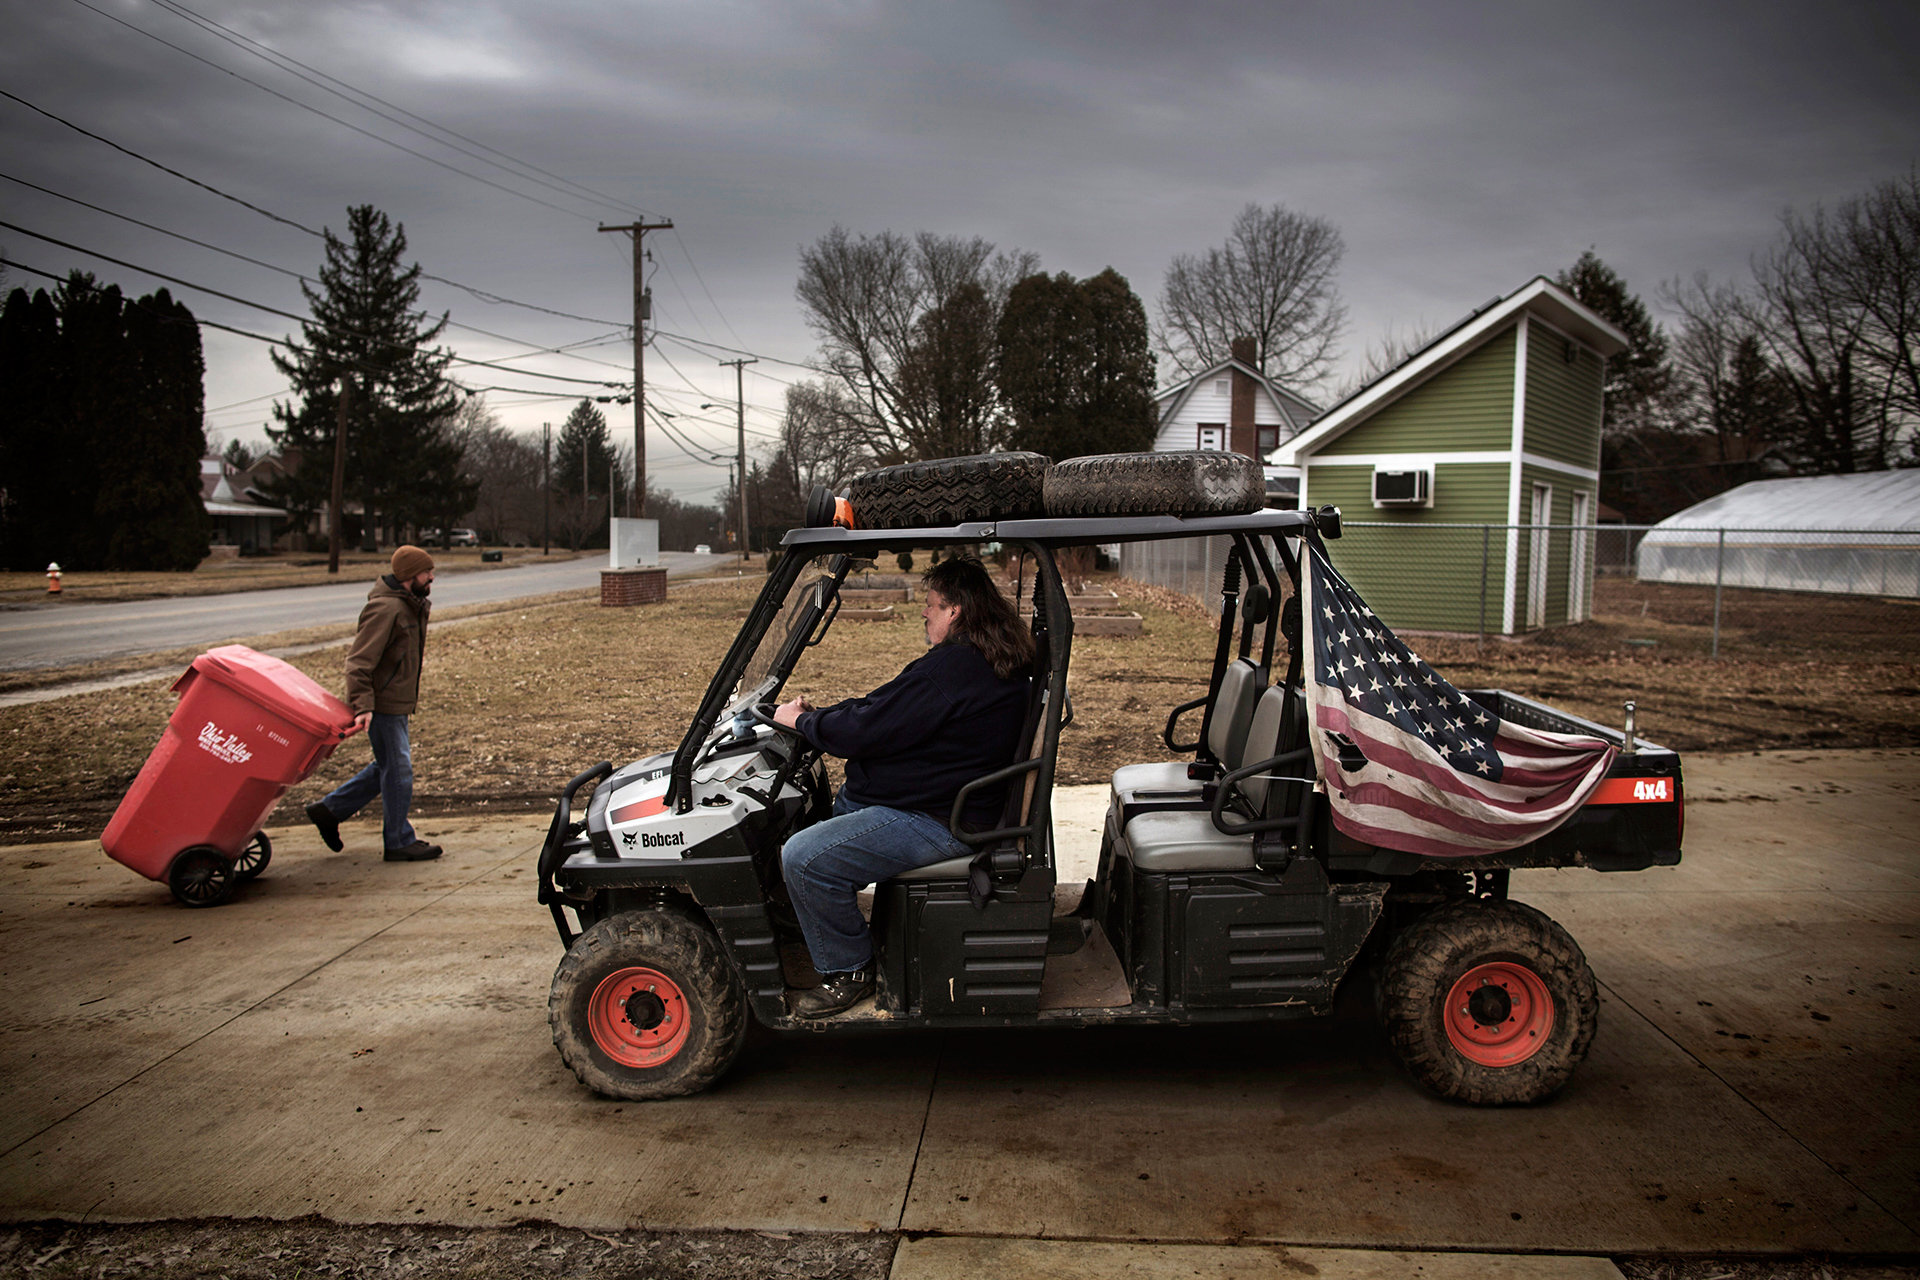 Mann fährt einen Buggy mit USA Flagge in Youngstown (Foto: Espen Rasmussen/VISUM)